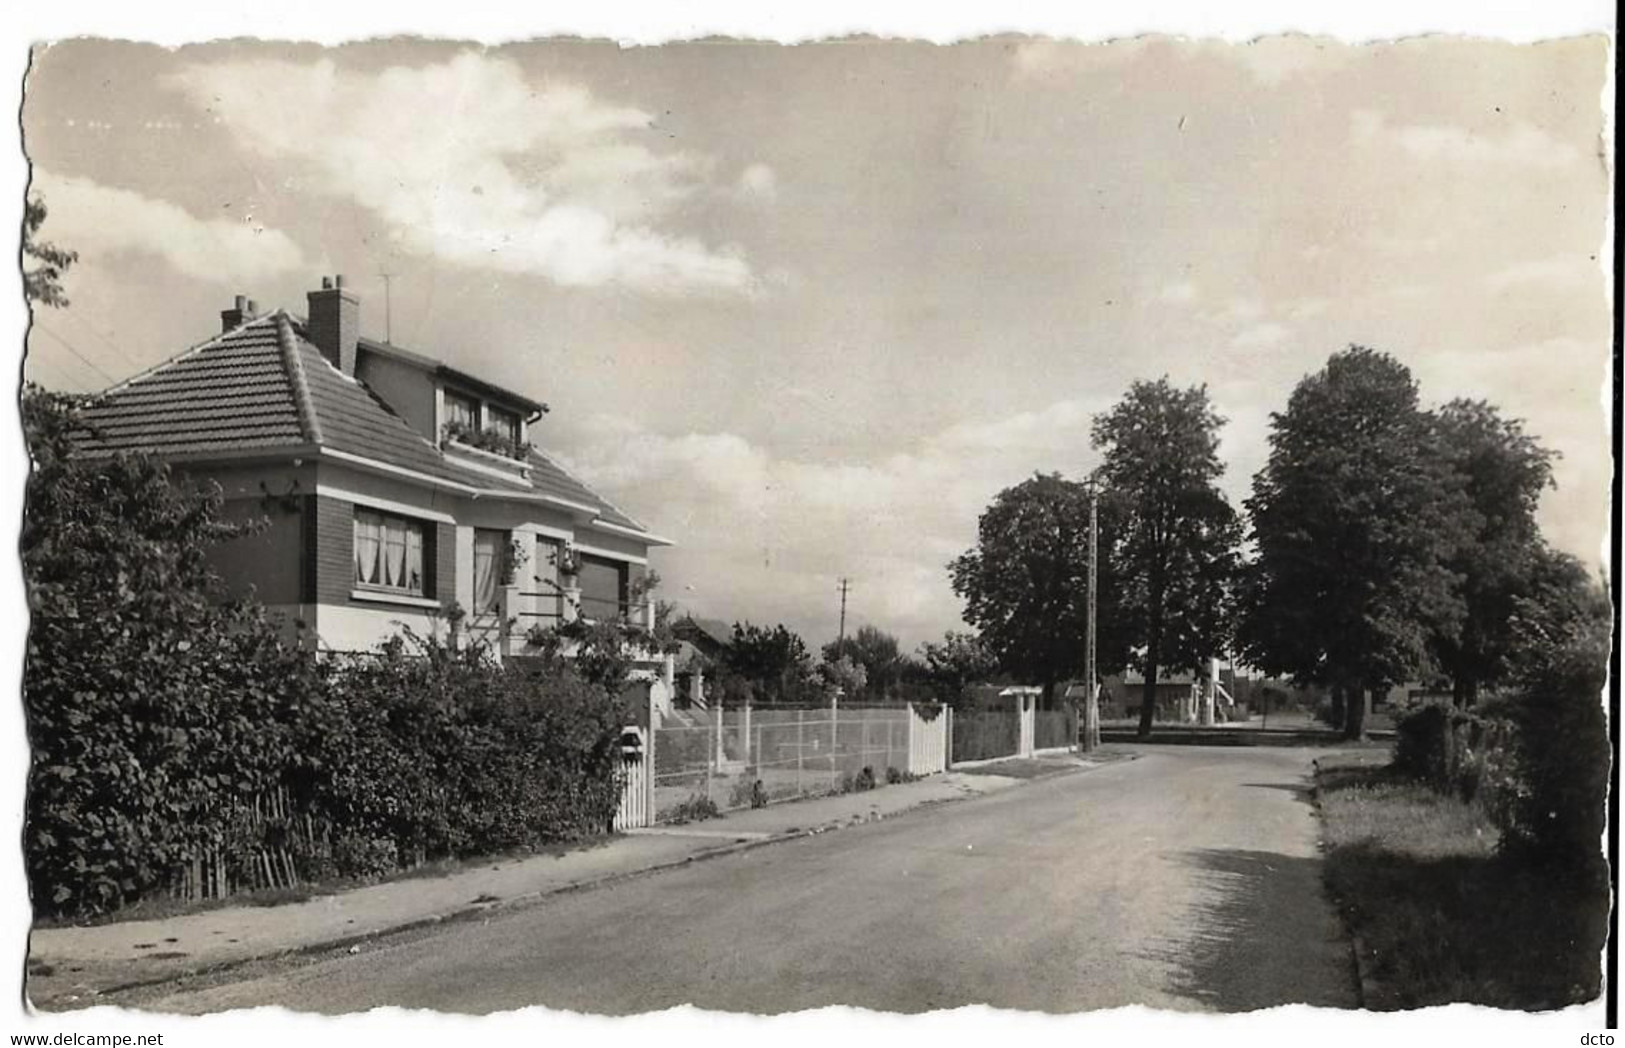 TREMBLAY-les-GONESSE (93) Place St-Denis Avenue Louis Dequet Ed. Librairie Cottages, Cpsm Pf - Tremblay En France